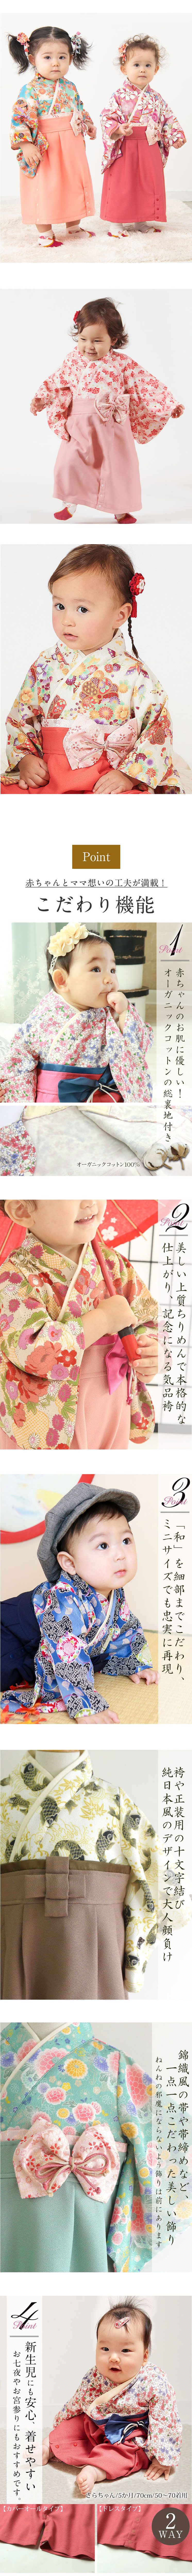 素肌に優しく本格的なデザインの袴風カバーオール